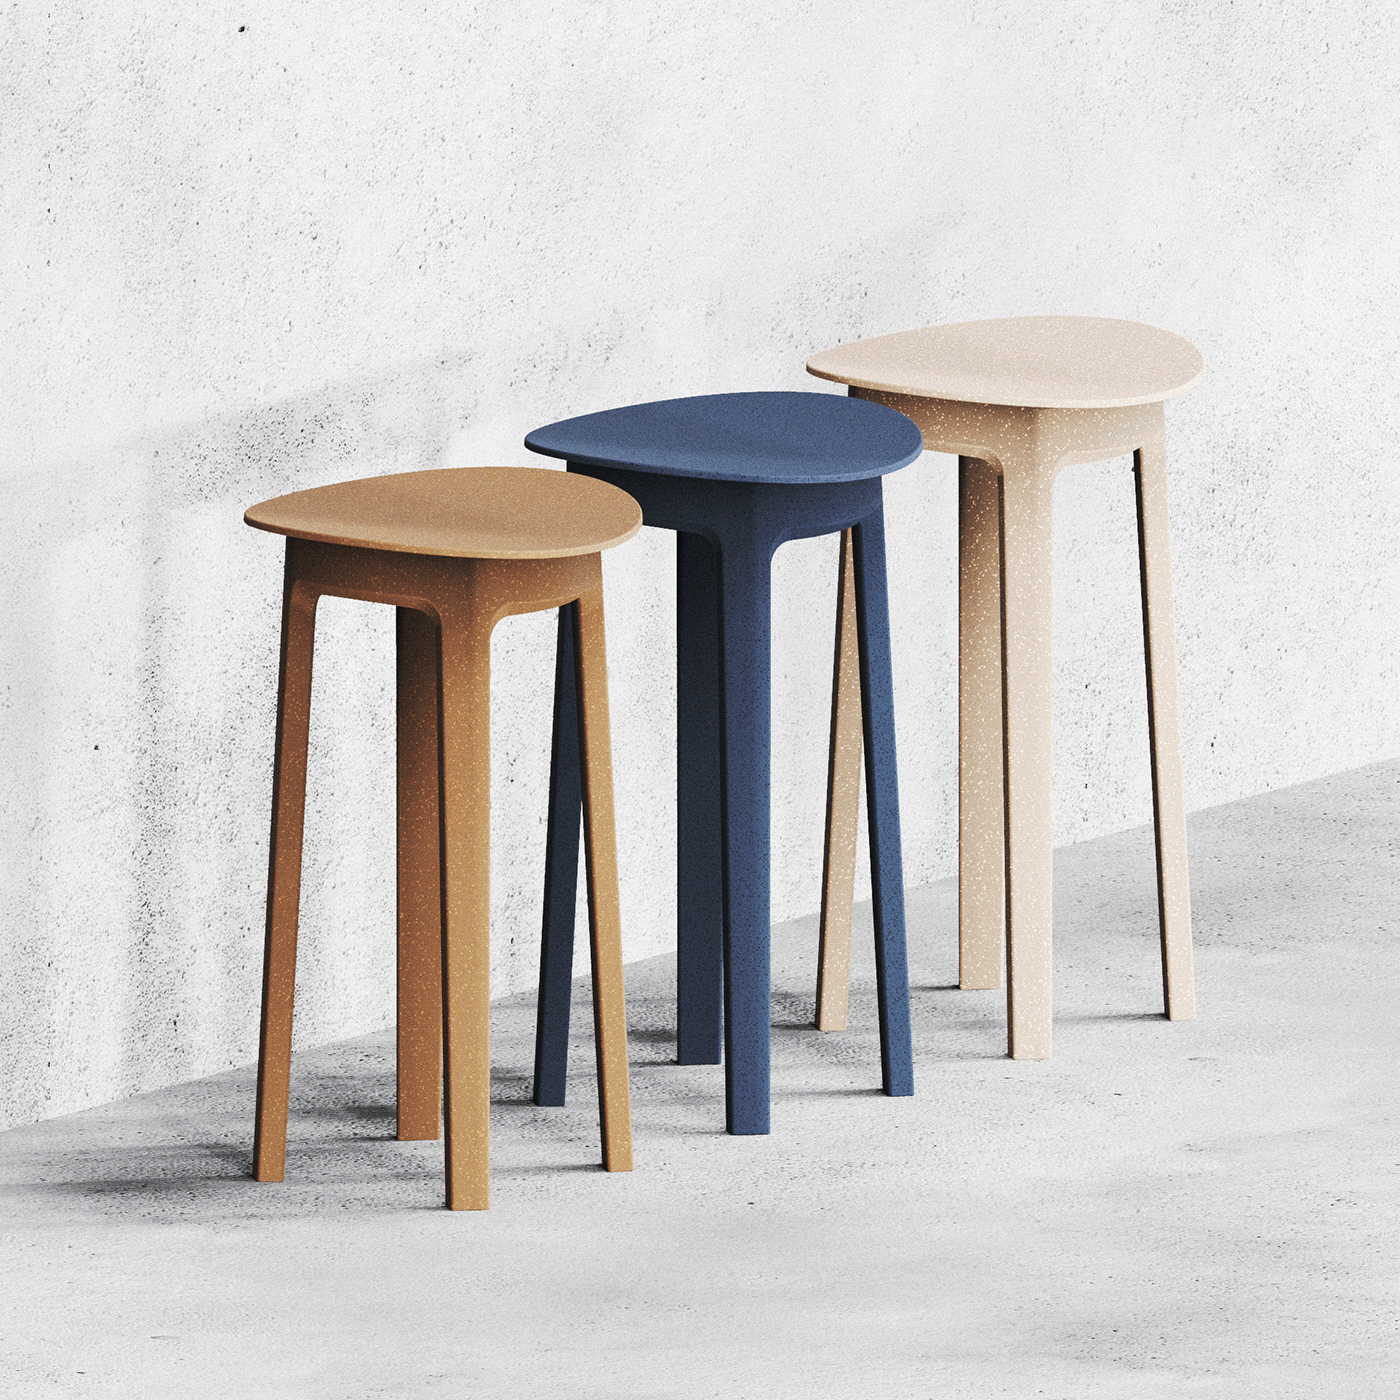 【宜家新品】ikea odger椅子|再生资源创造的作品